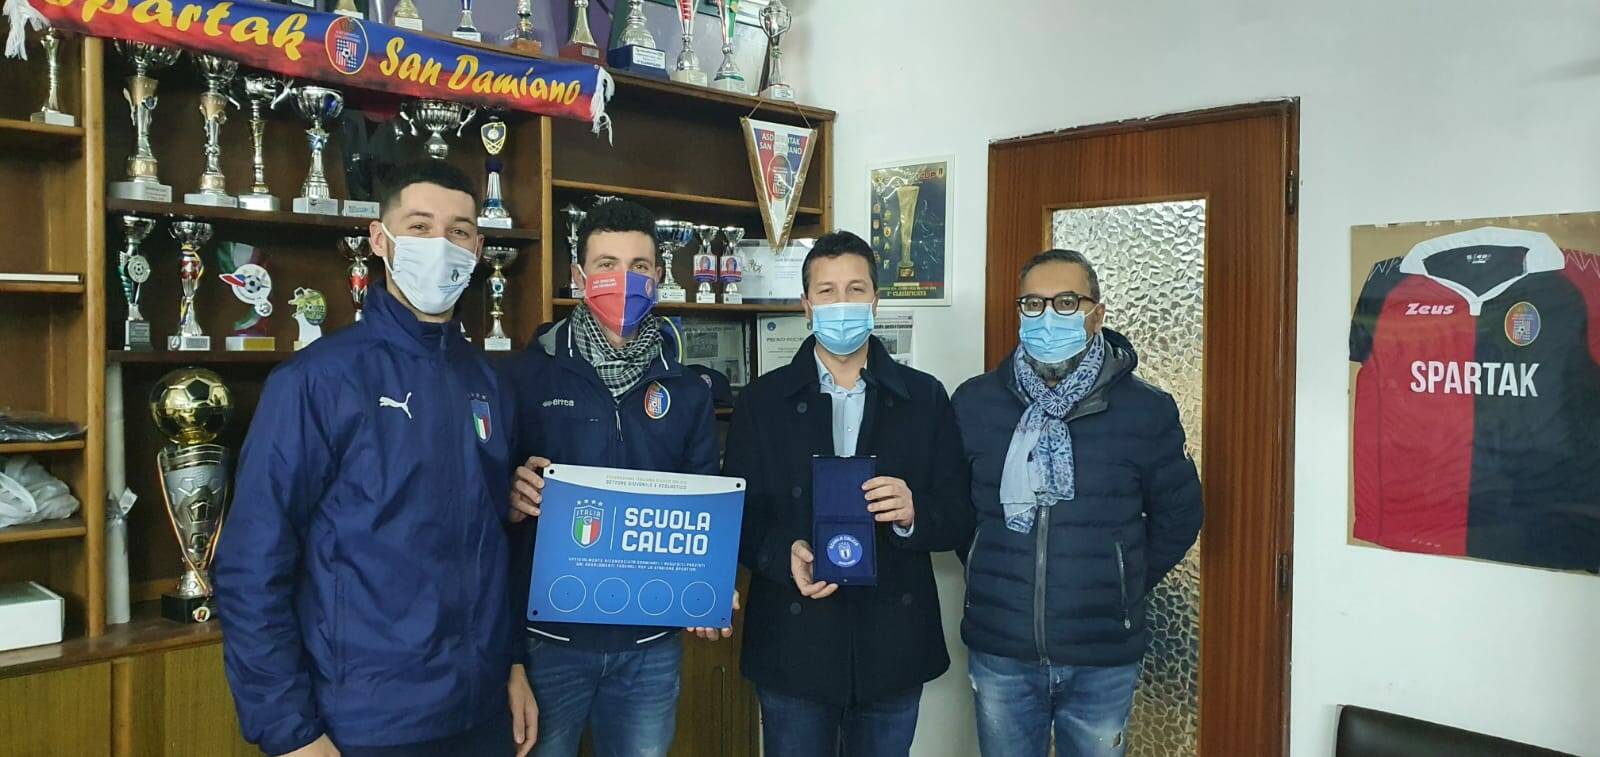 Sparta San Damiano d’Asti premiato scuola calcio riconosciuta